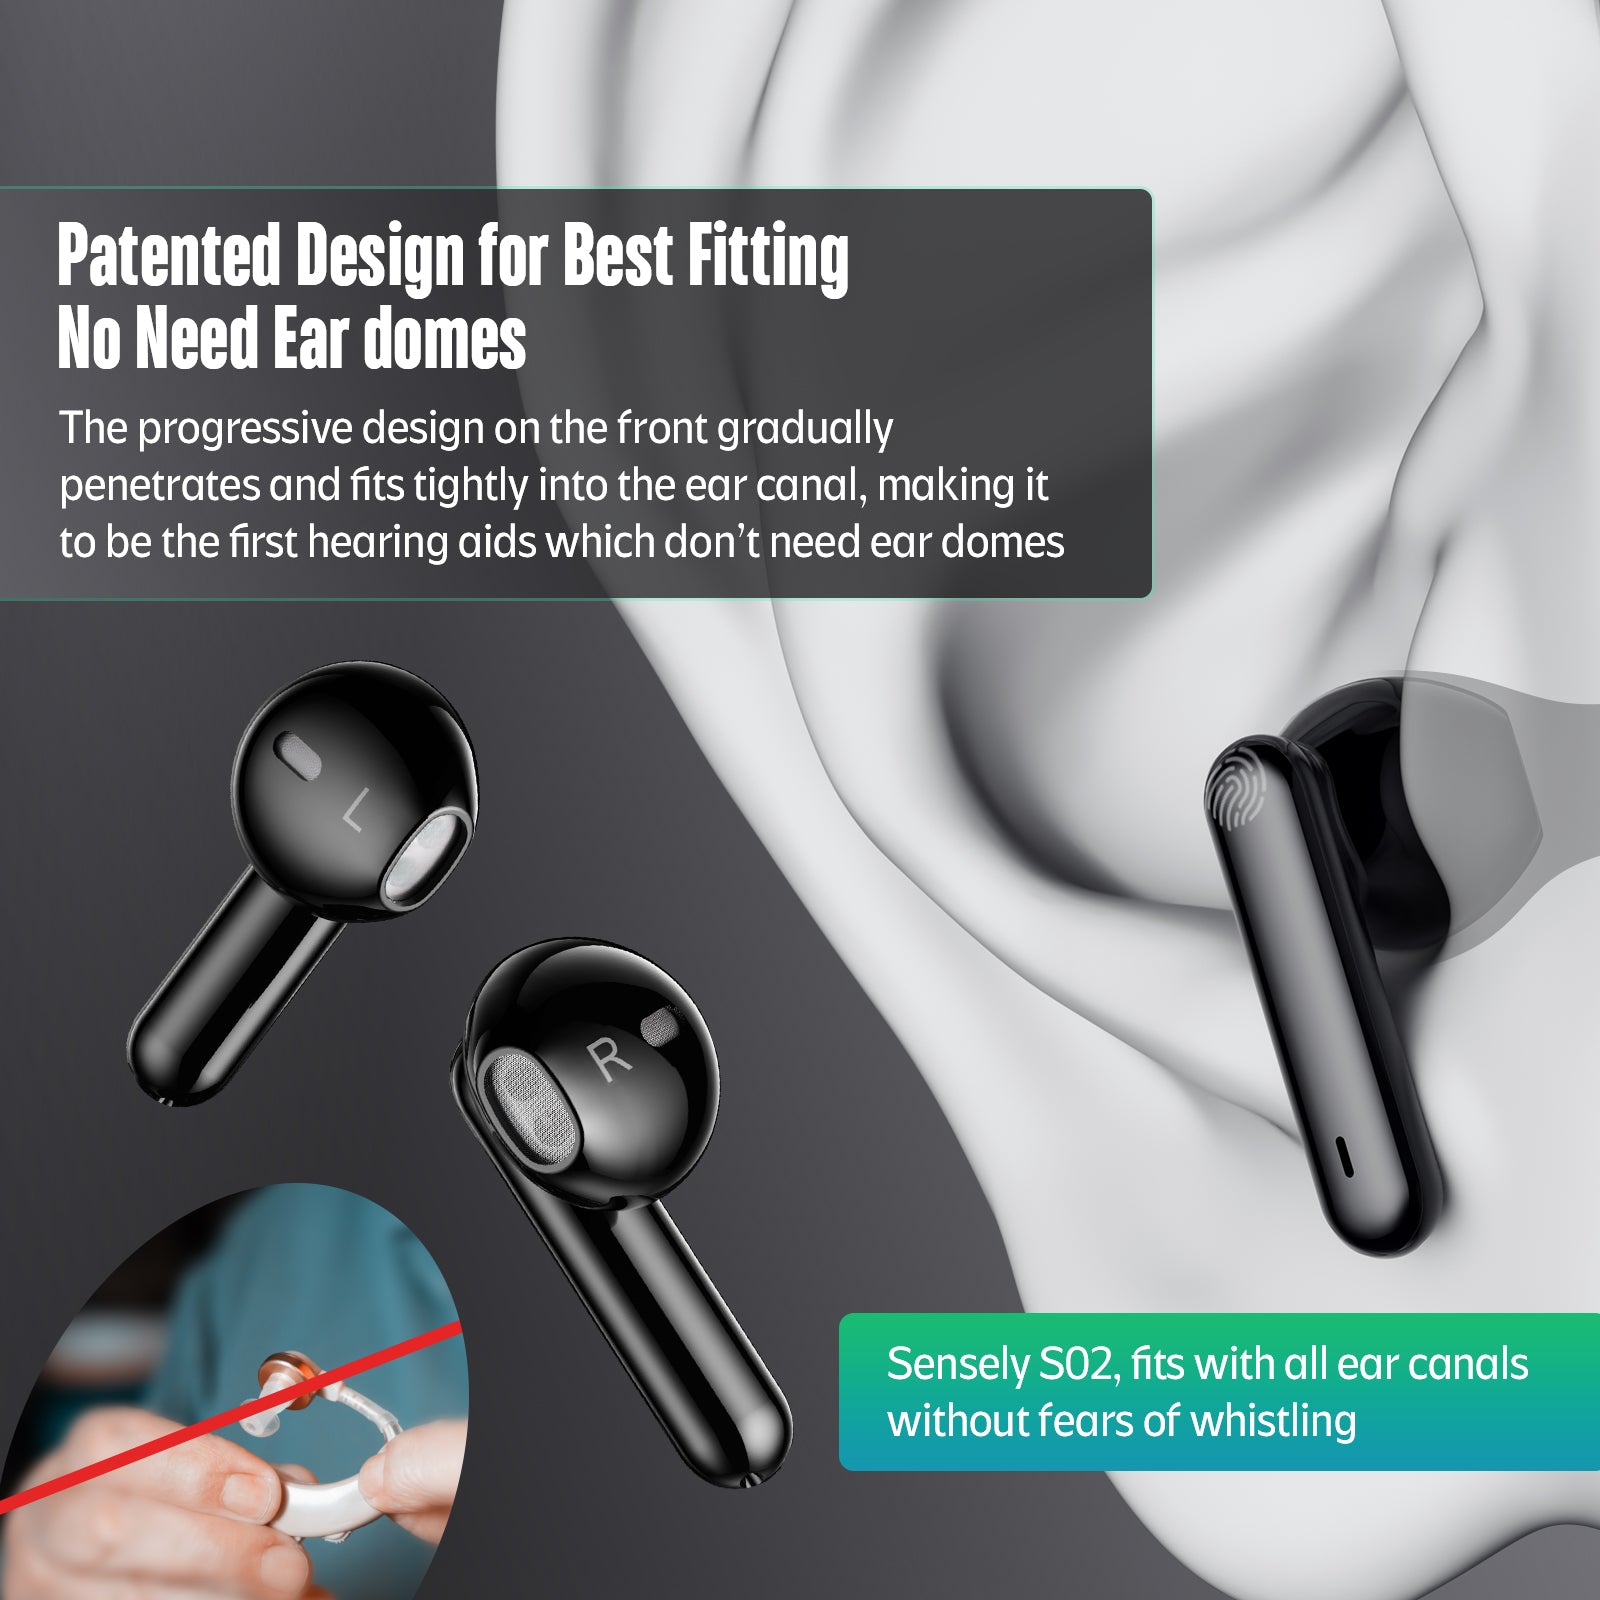 sensley s02 hearing aids-no need eardomes